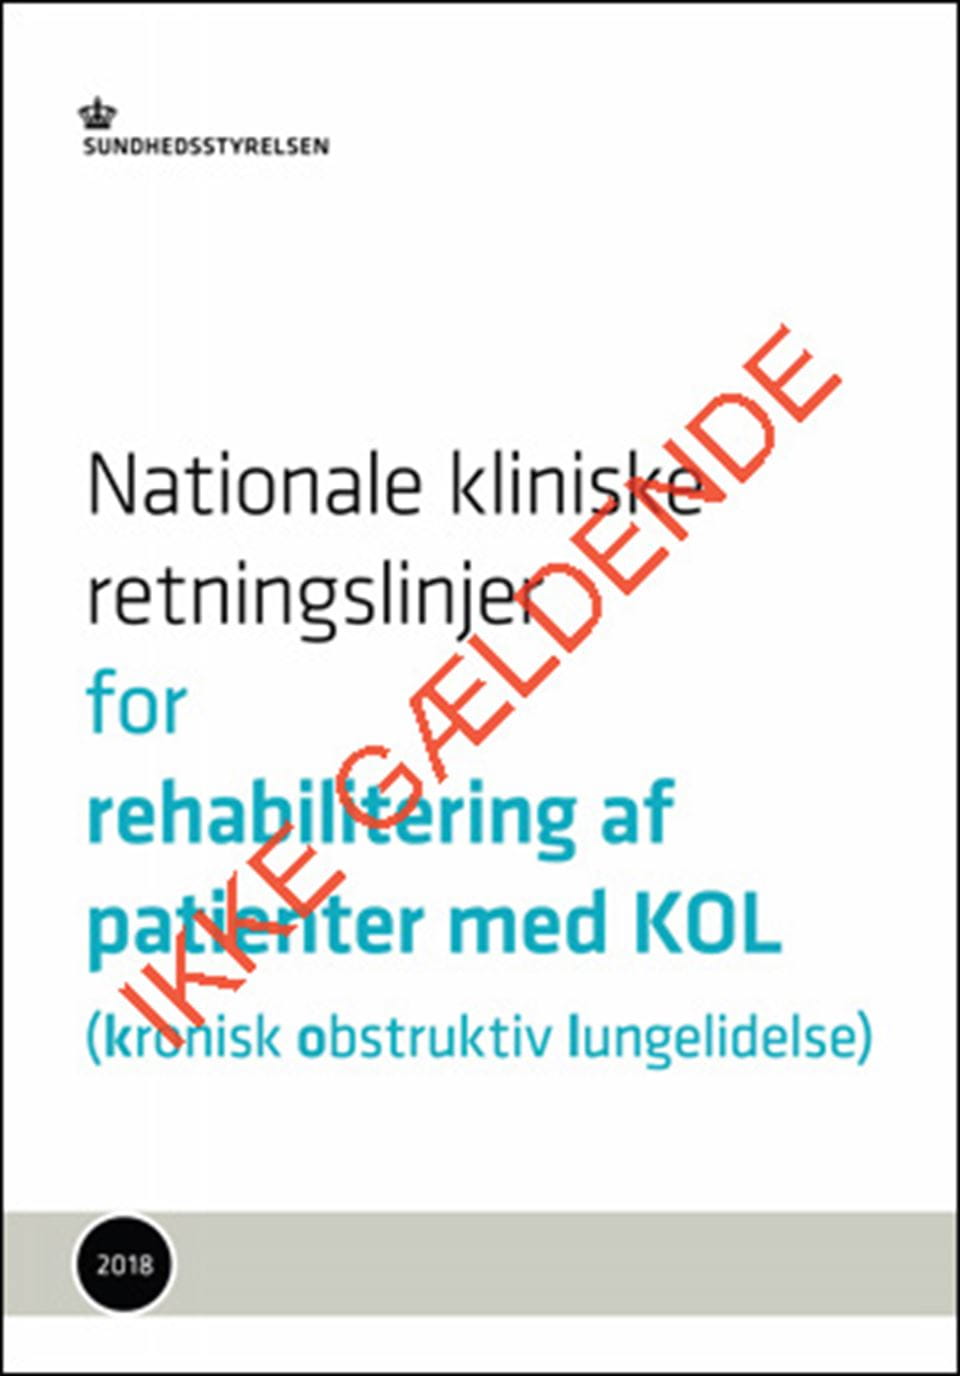 NKR: Rehabilitering af patienter med KOL